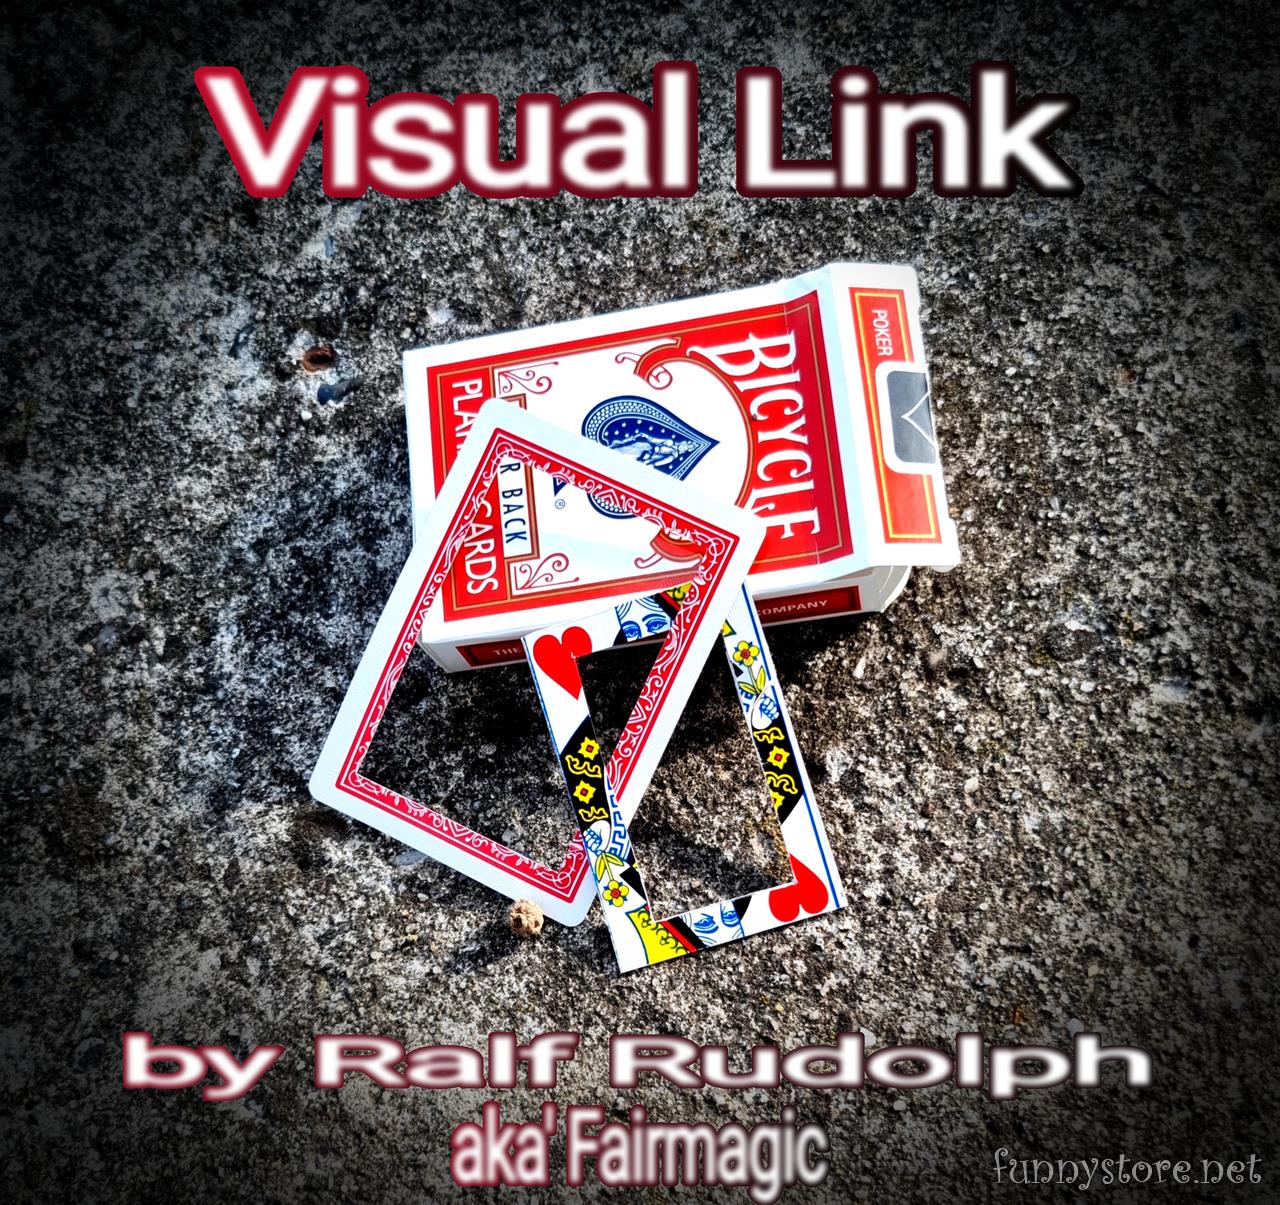 Ralf Rudolph aka\'Fairmagic - Visual Link